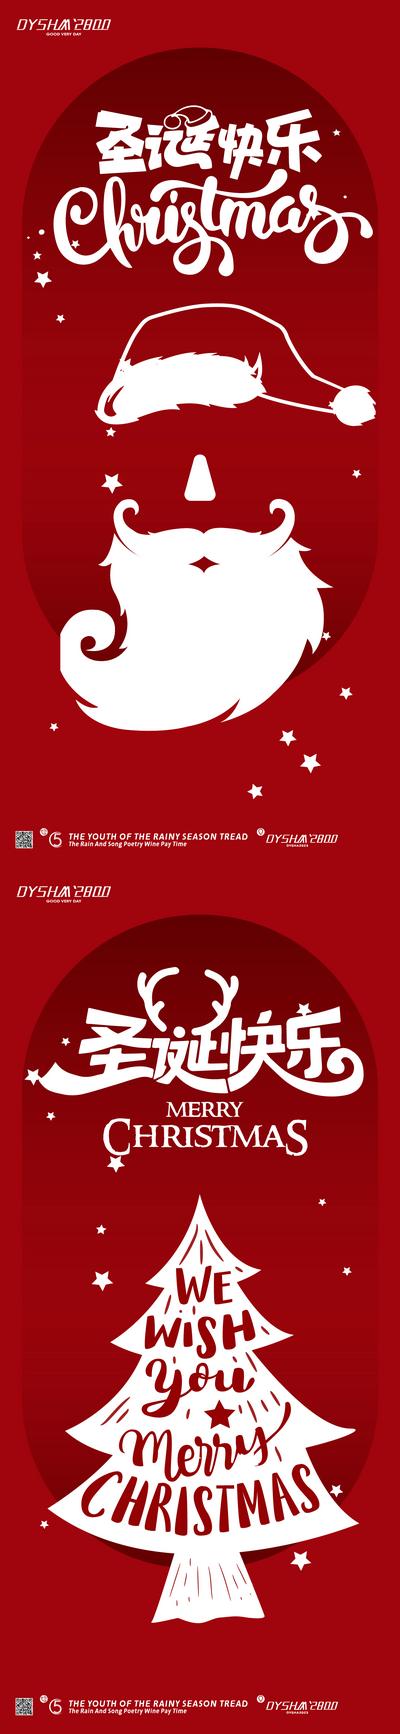 南门网 广告 海报 节日 圣诞节 圣诞老人 帽子 圣诞快乐 系列 简约